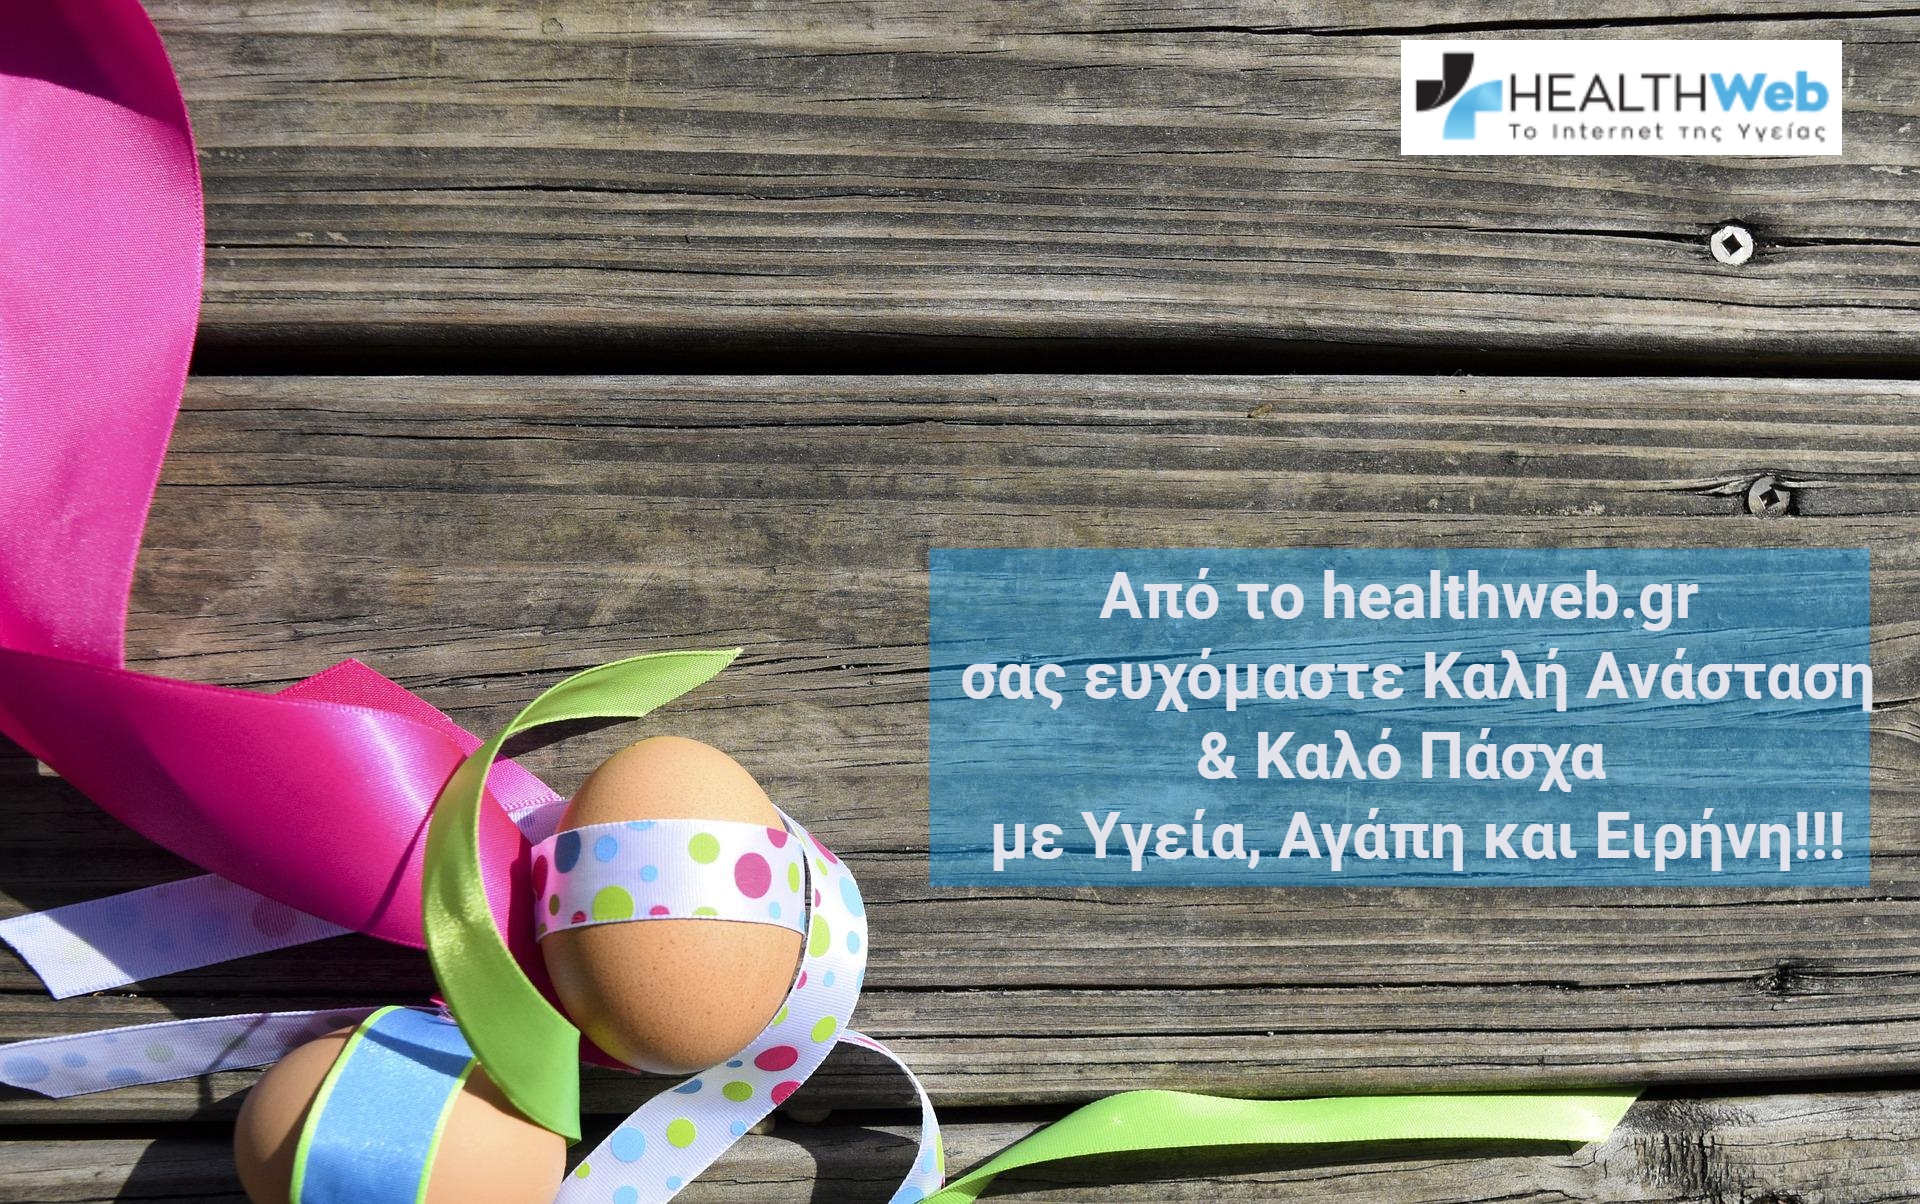 Καλό Πάσχα: Καλή Ανάσταση από το healthweb.gr με ευχές για Υγεία, Αγάπη & Ειρήνη!!!